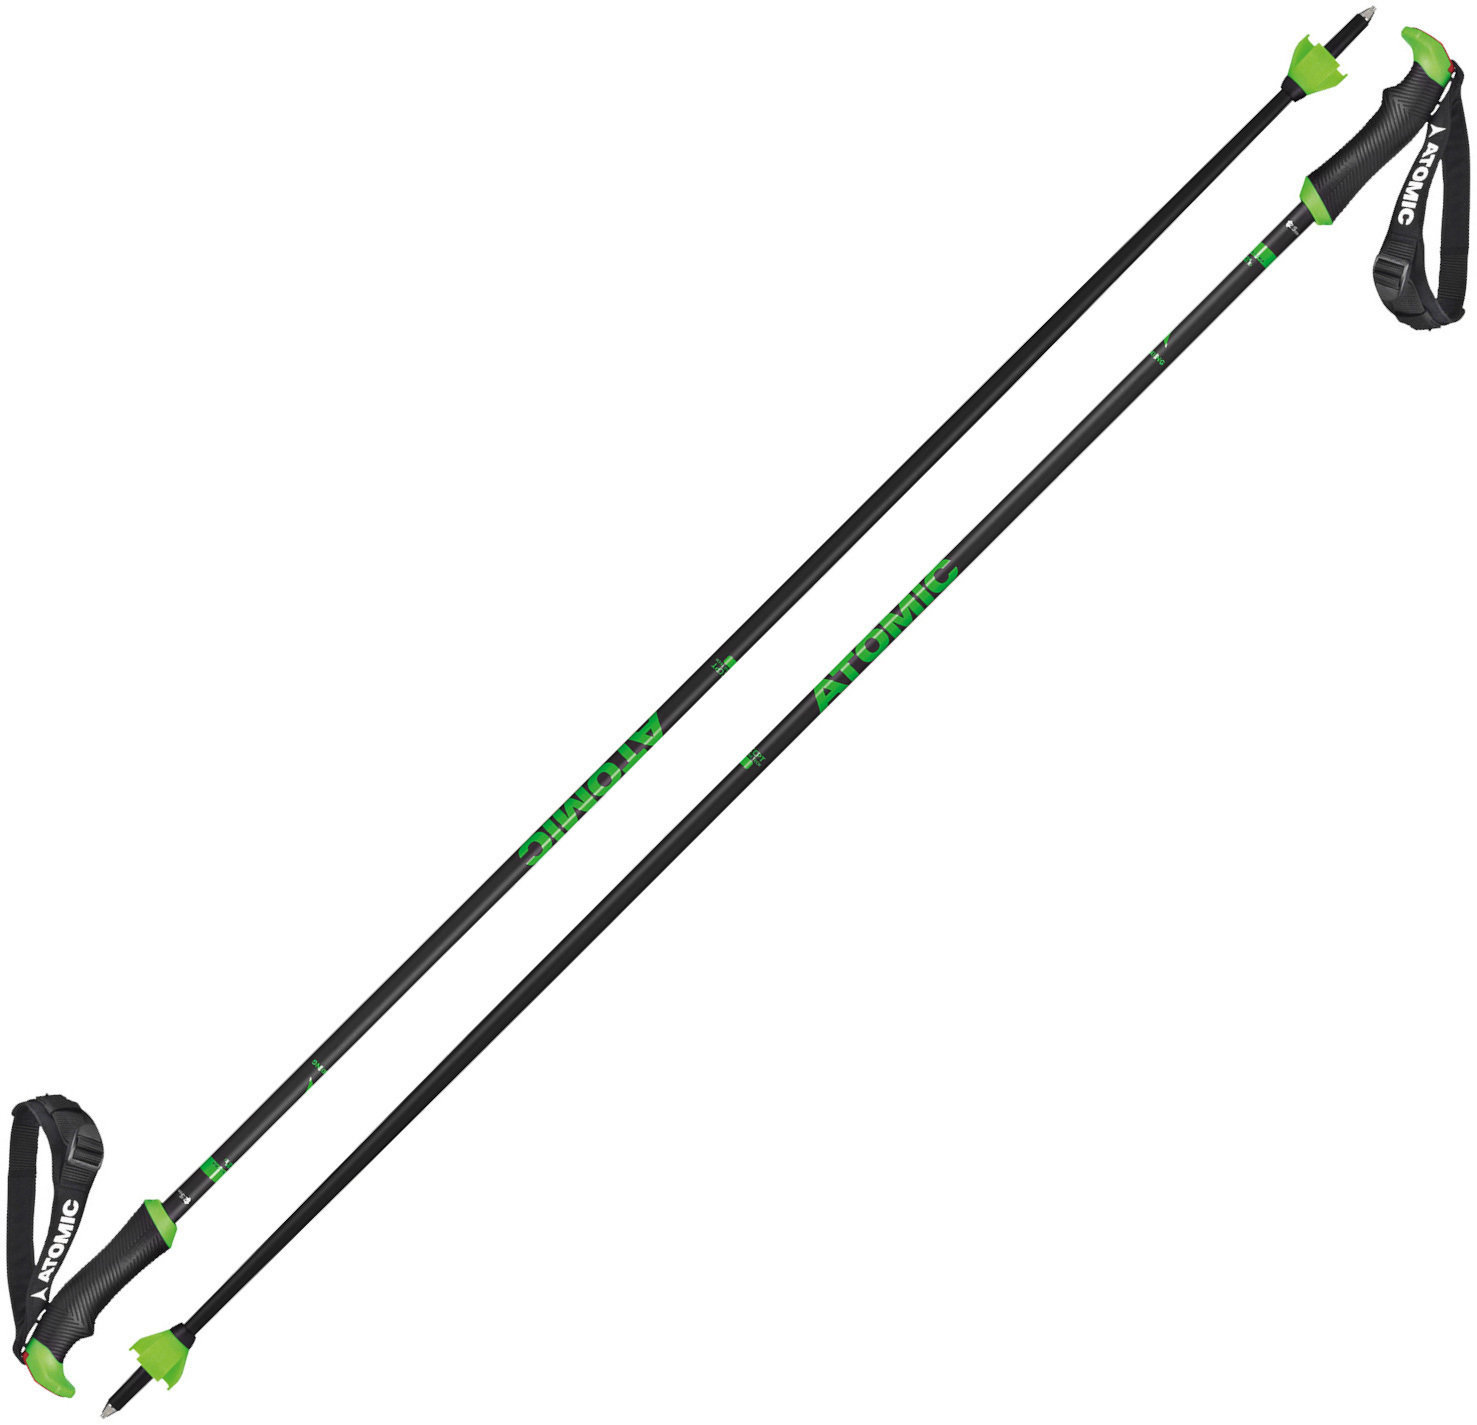 Ski-Stöcke Atomic Redster X Carbon SQS Grau-Grün 130 cm Ski-Stöcke